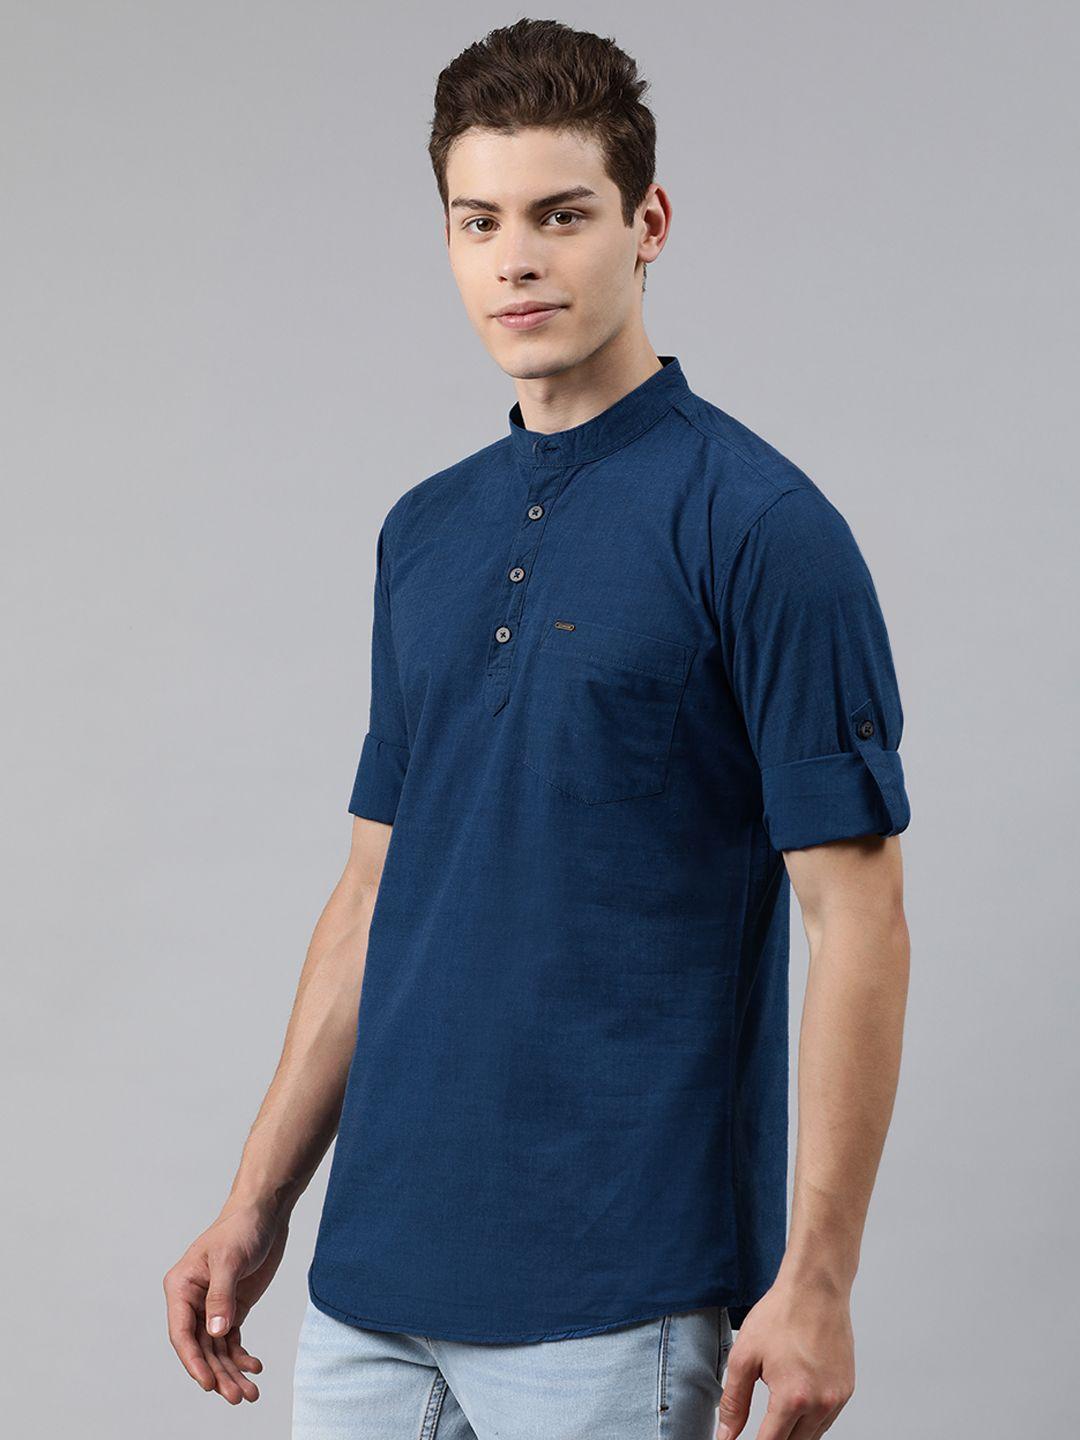 urbano fashion men teal blue slim fit solid half placket casual shirt